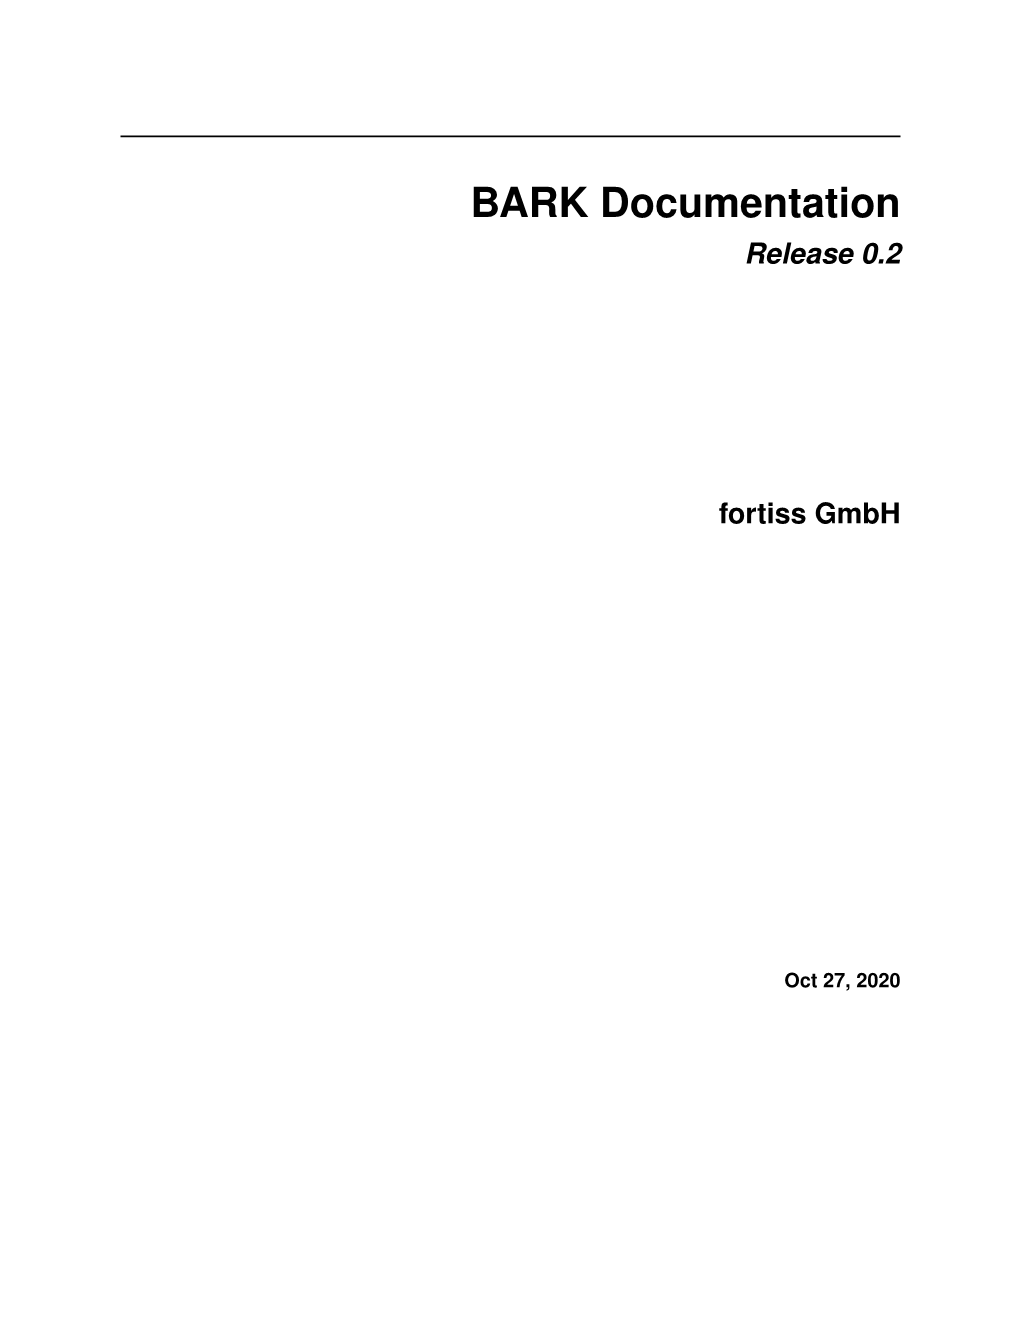 BARK Documentation Release 0.2 Fortiss